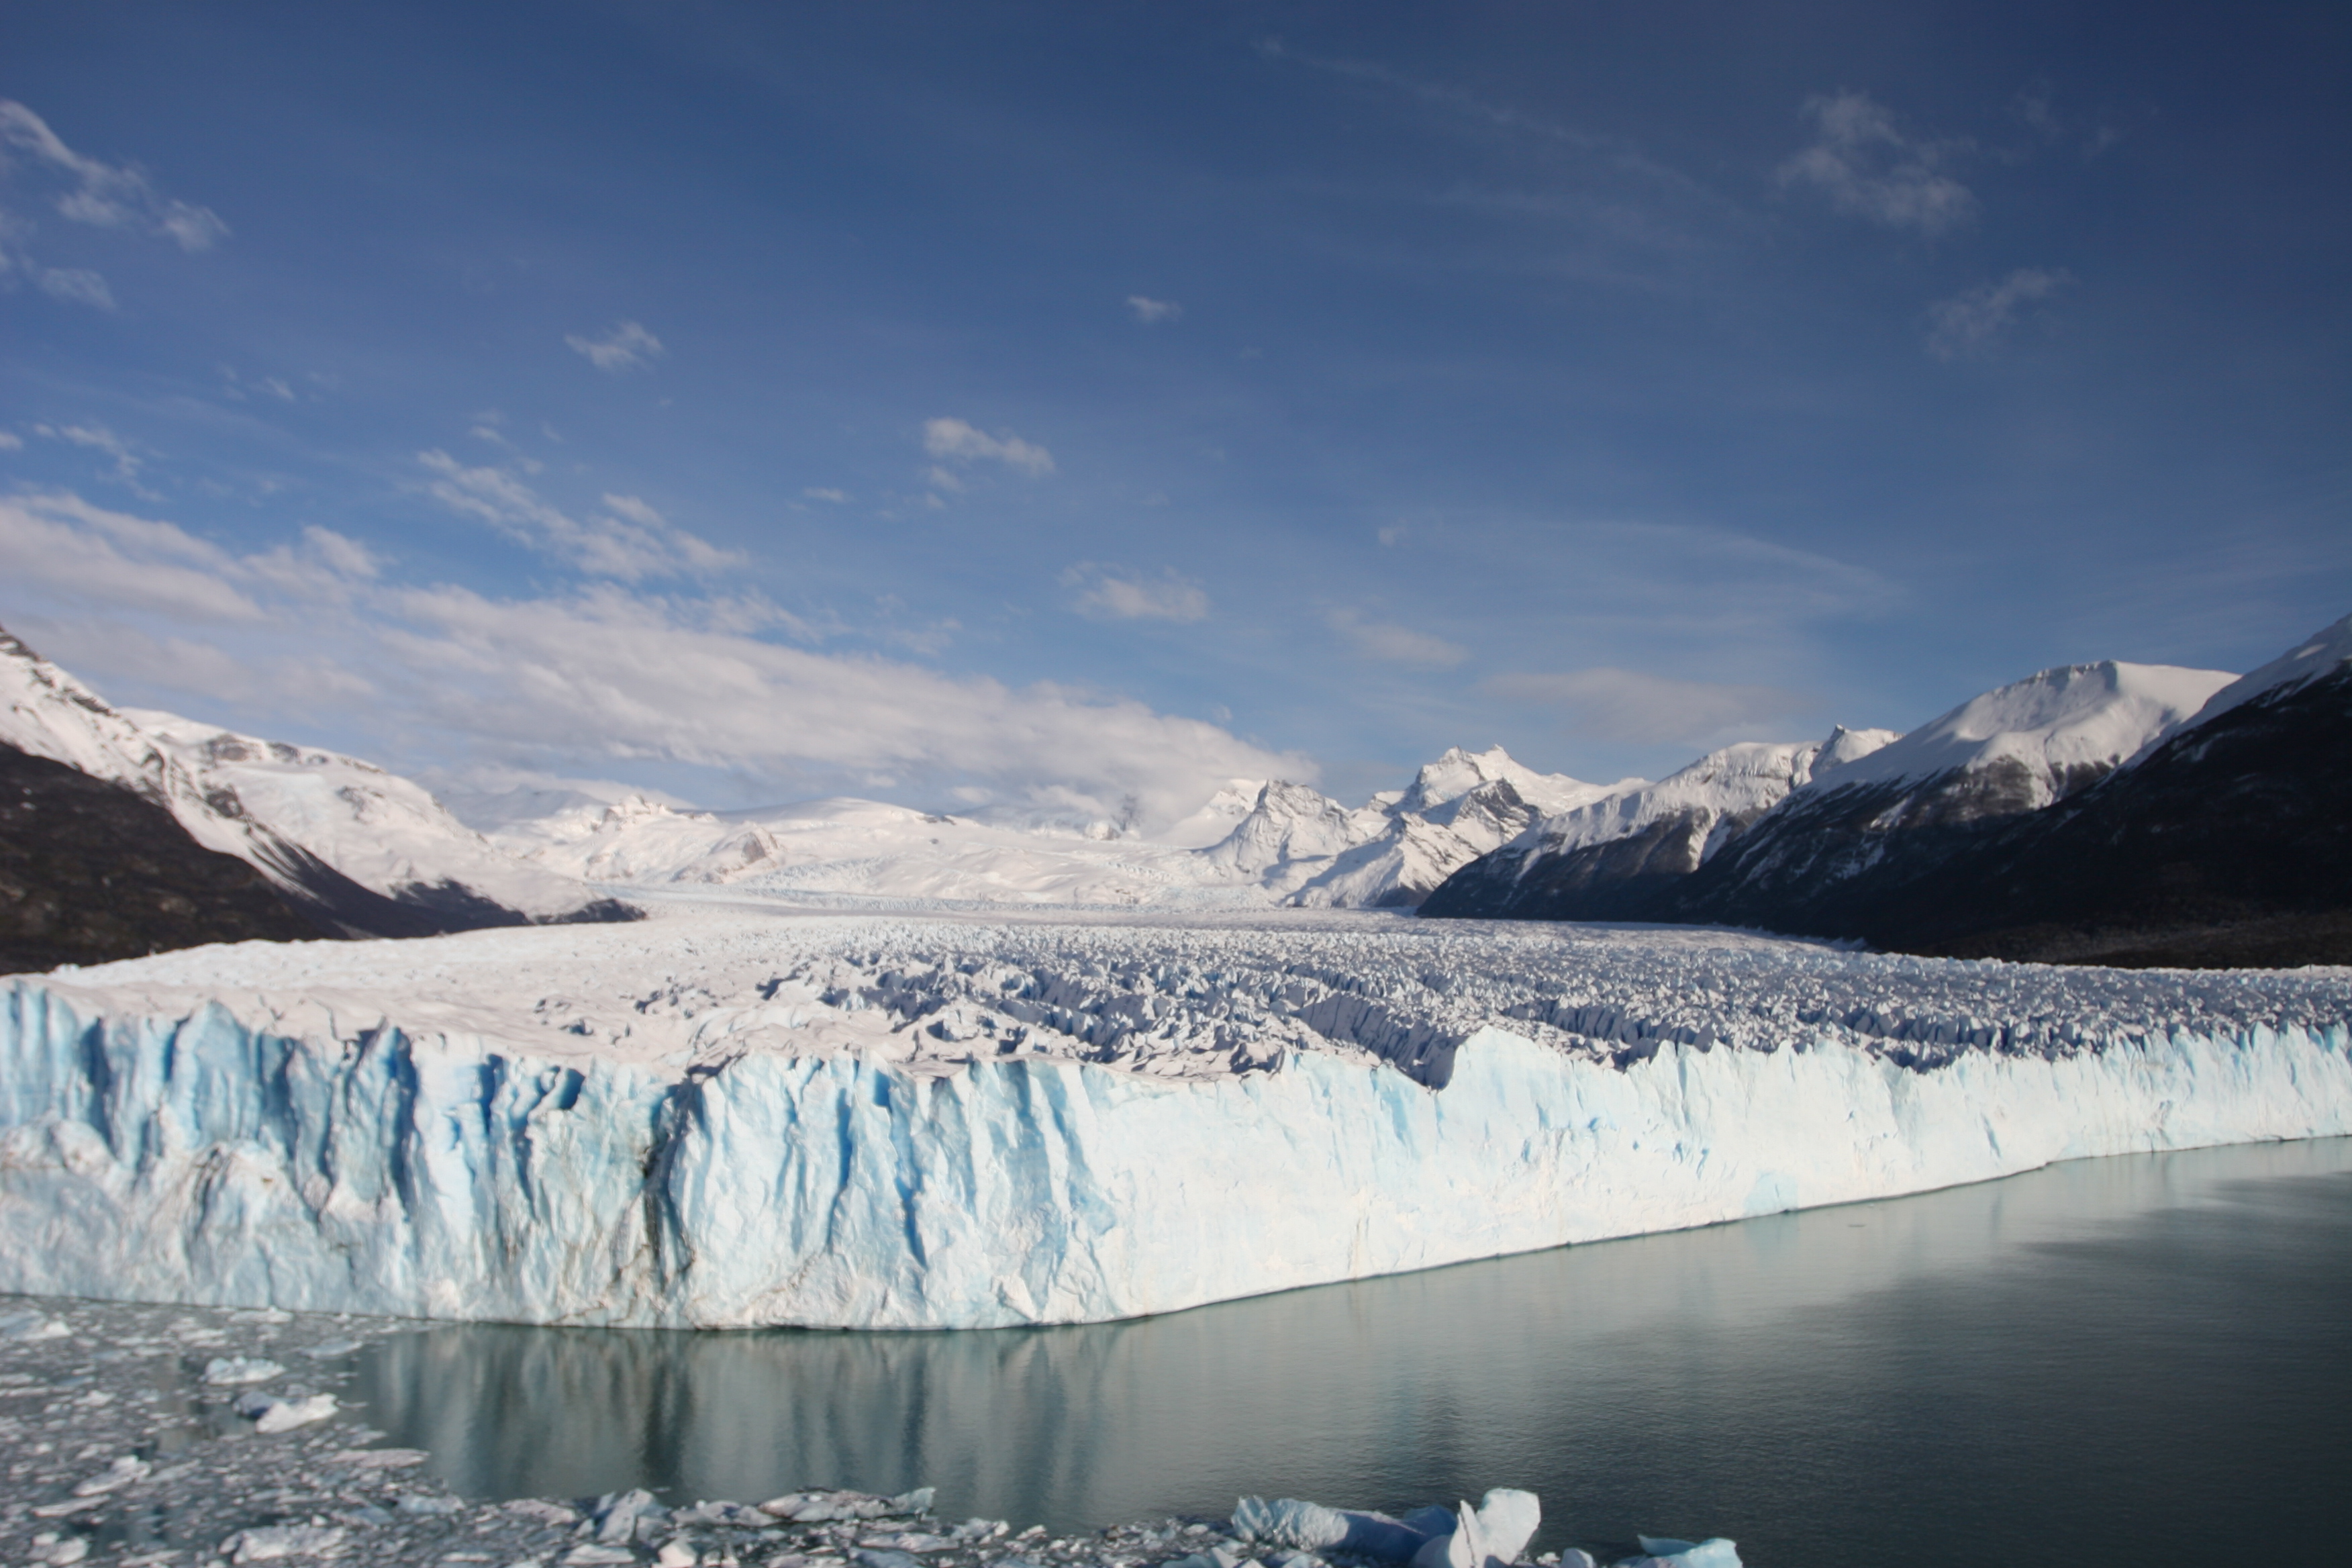 Comenzó la espectacular ruptura del Glaciar Perito Moreno: seguila en vivo